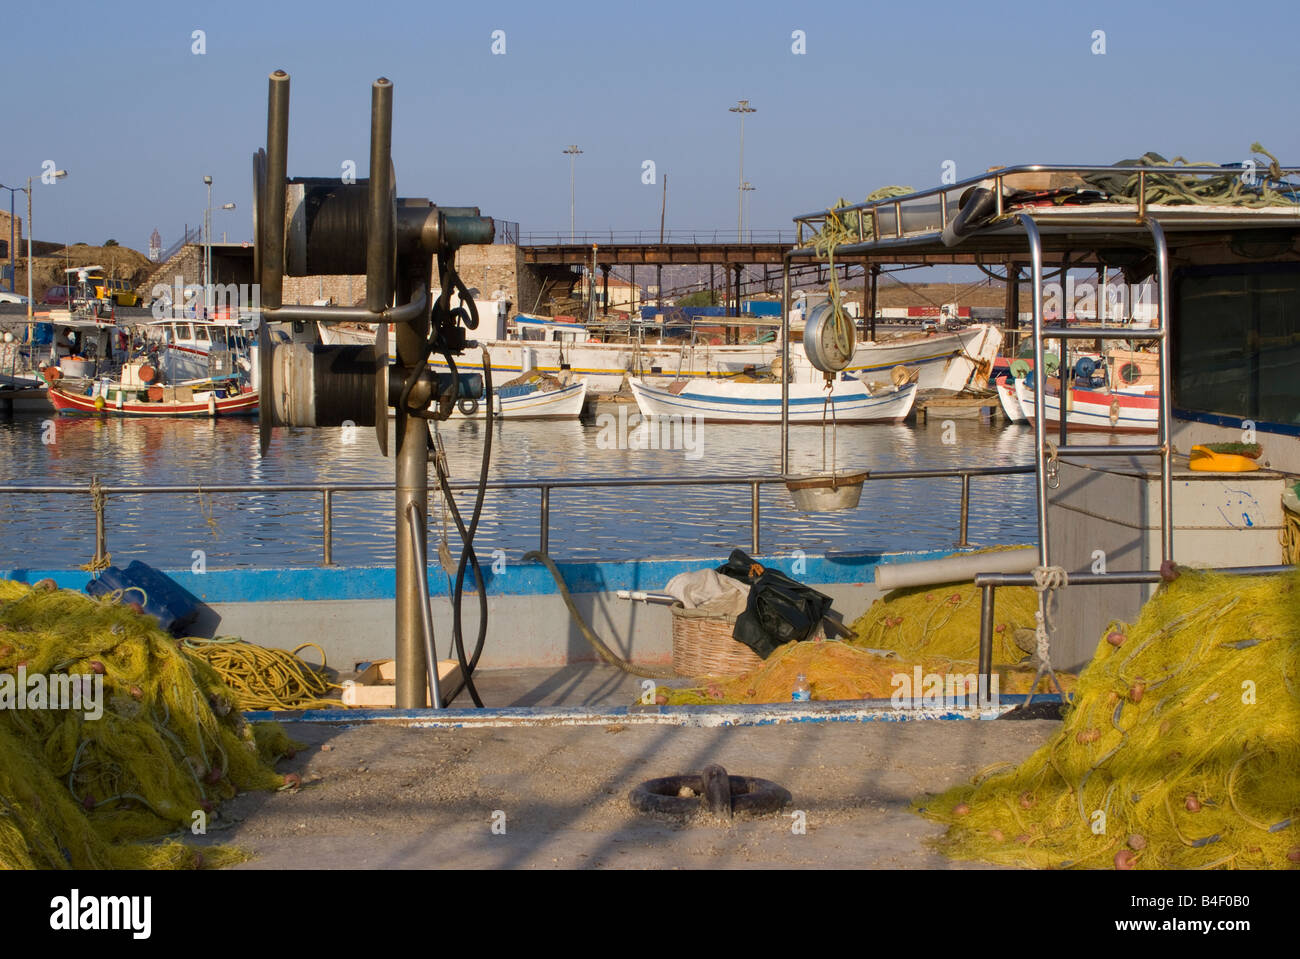 Il giallo delle reti da pesca e il verricello di sollevamento con la pesca costiera barche ormeggiate nel porto di Lavrio terraferma greca Aegean Grecia Foto Stock